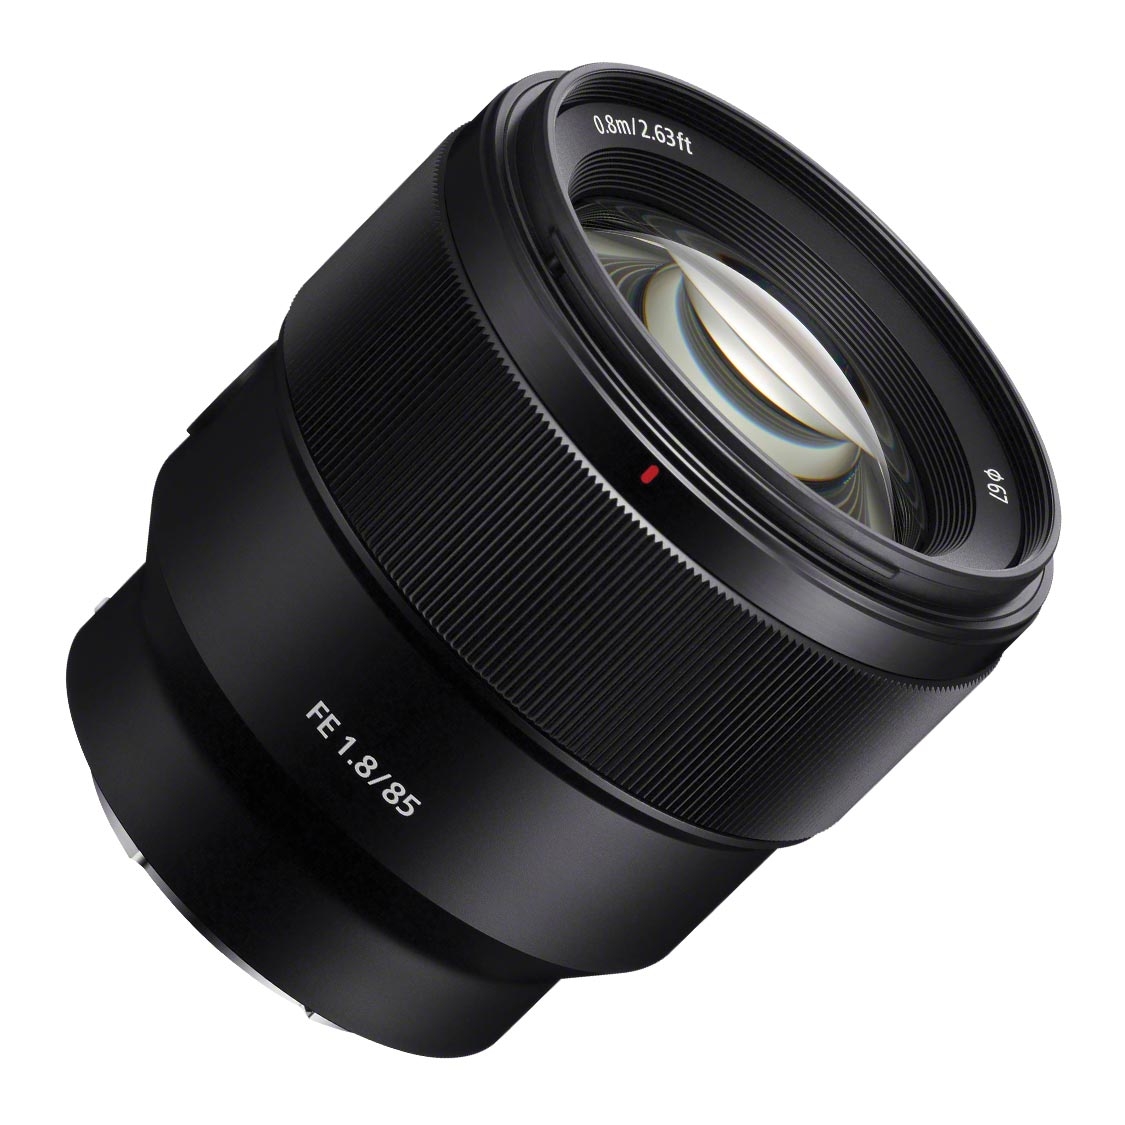 Sony FE 85mm F1.8 Lens